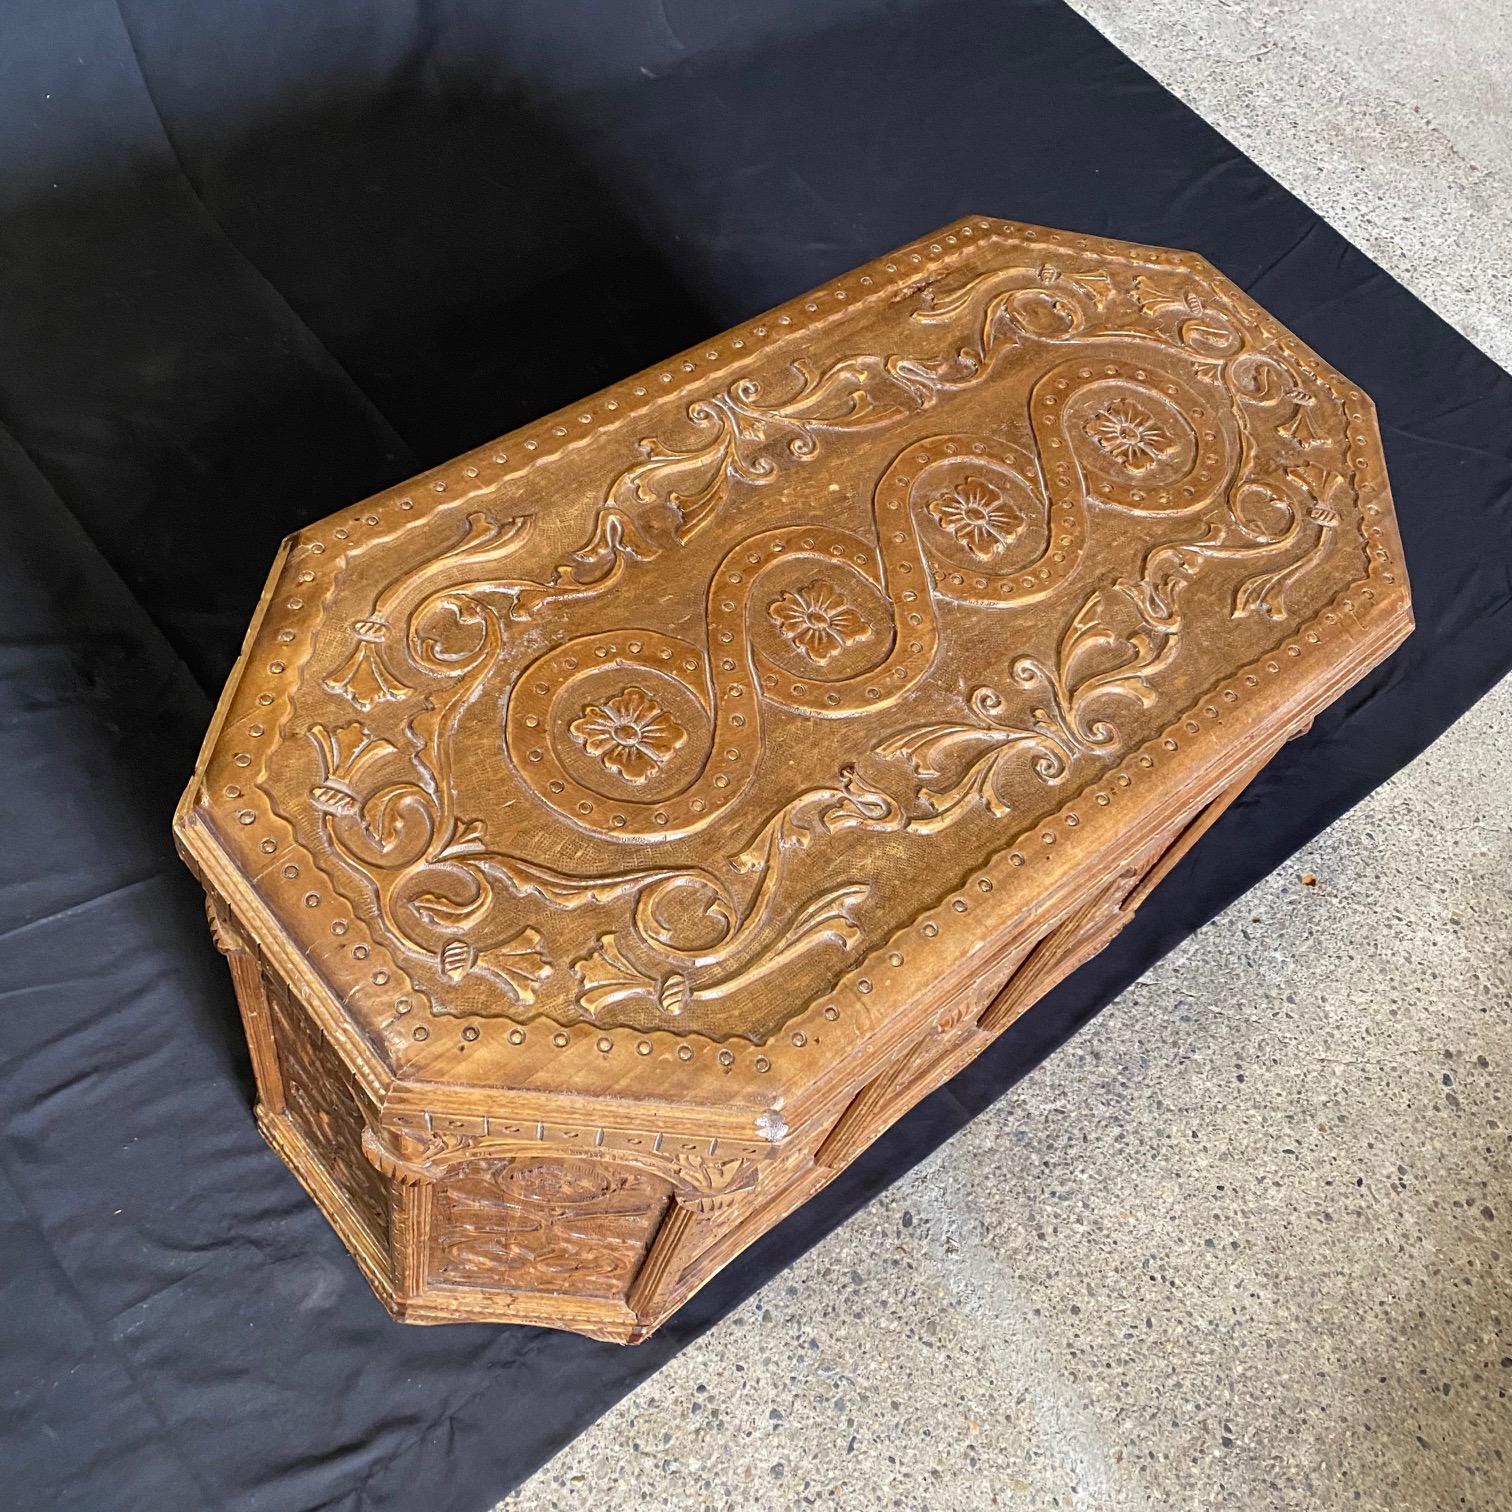 Coffre ancien européen, probablement italien, en forme de sarcophage, de coffre ou de coffre à couvertures qui ferait également une superbe table basse. Can peut également servir de rangement dans une chambre à coucher, au pied du lit. Un 